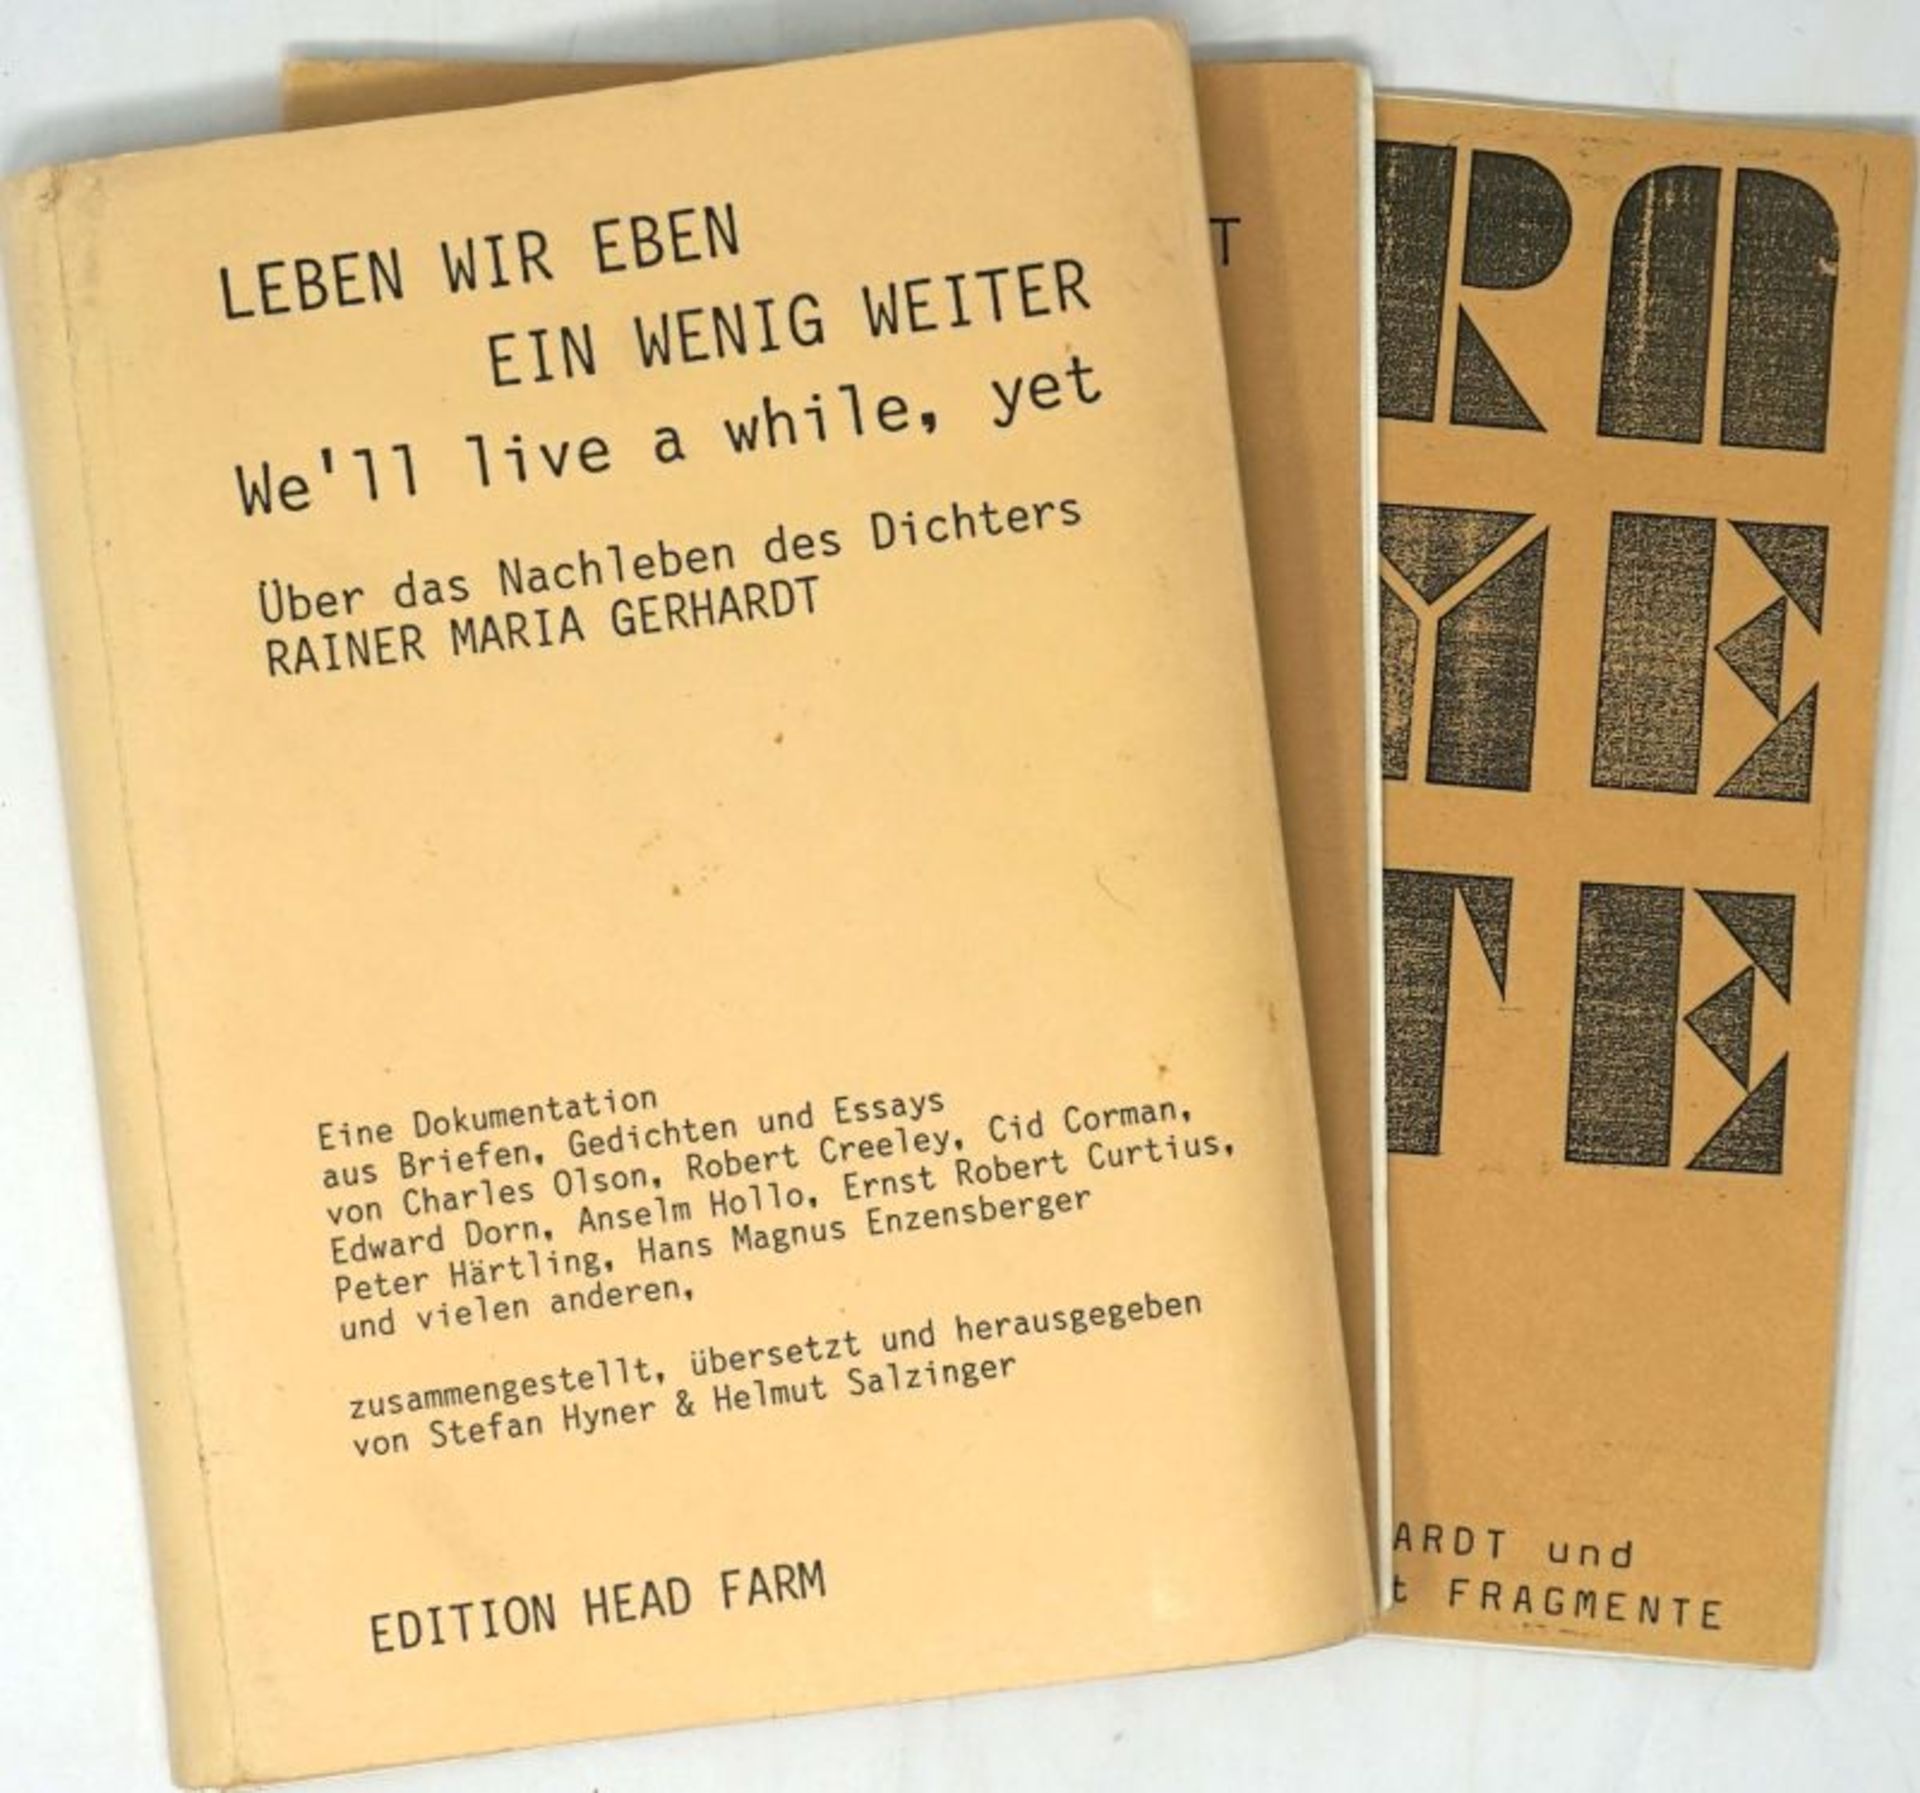 FALK 9 und Gerhardt, Rainer M.: Rainer M. Gerhardt und die Zeitschrift Fragmente + Beiga...